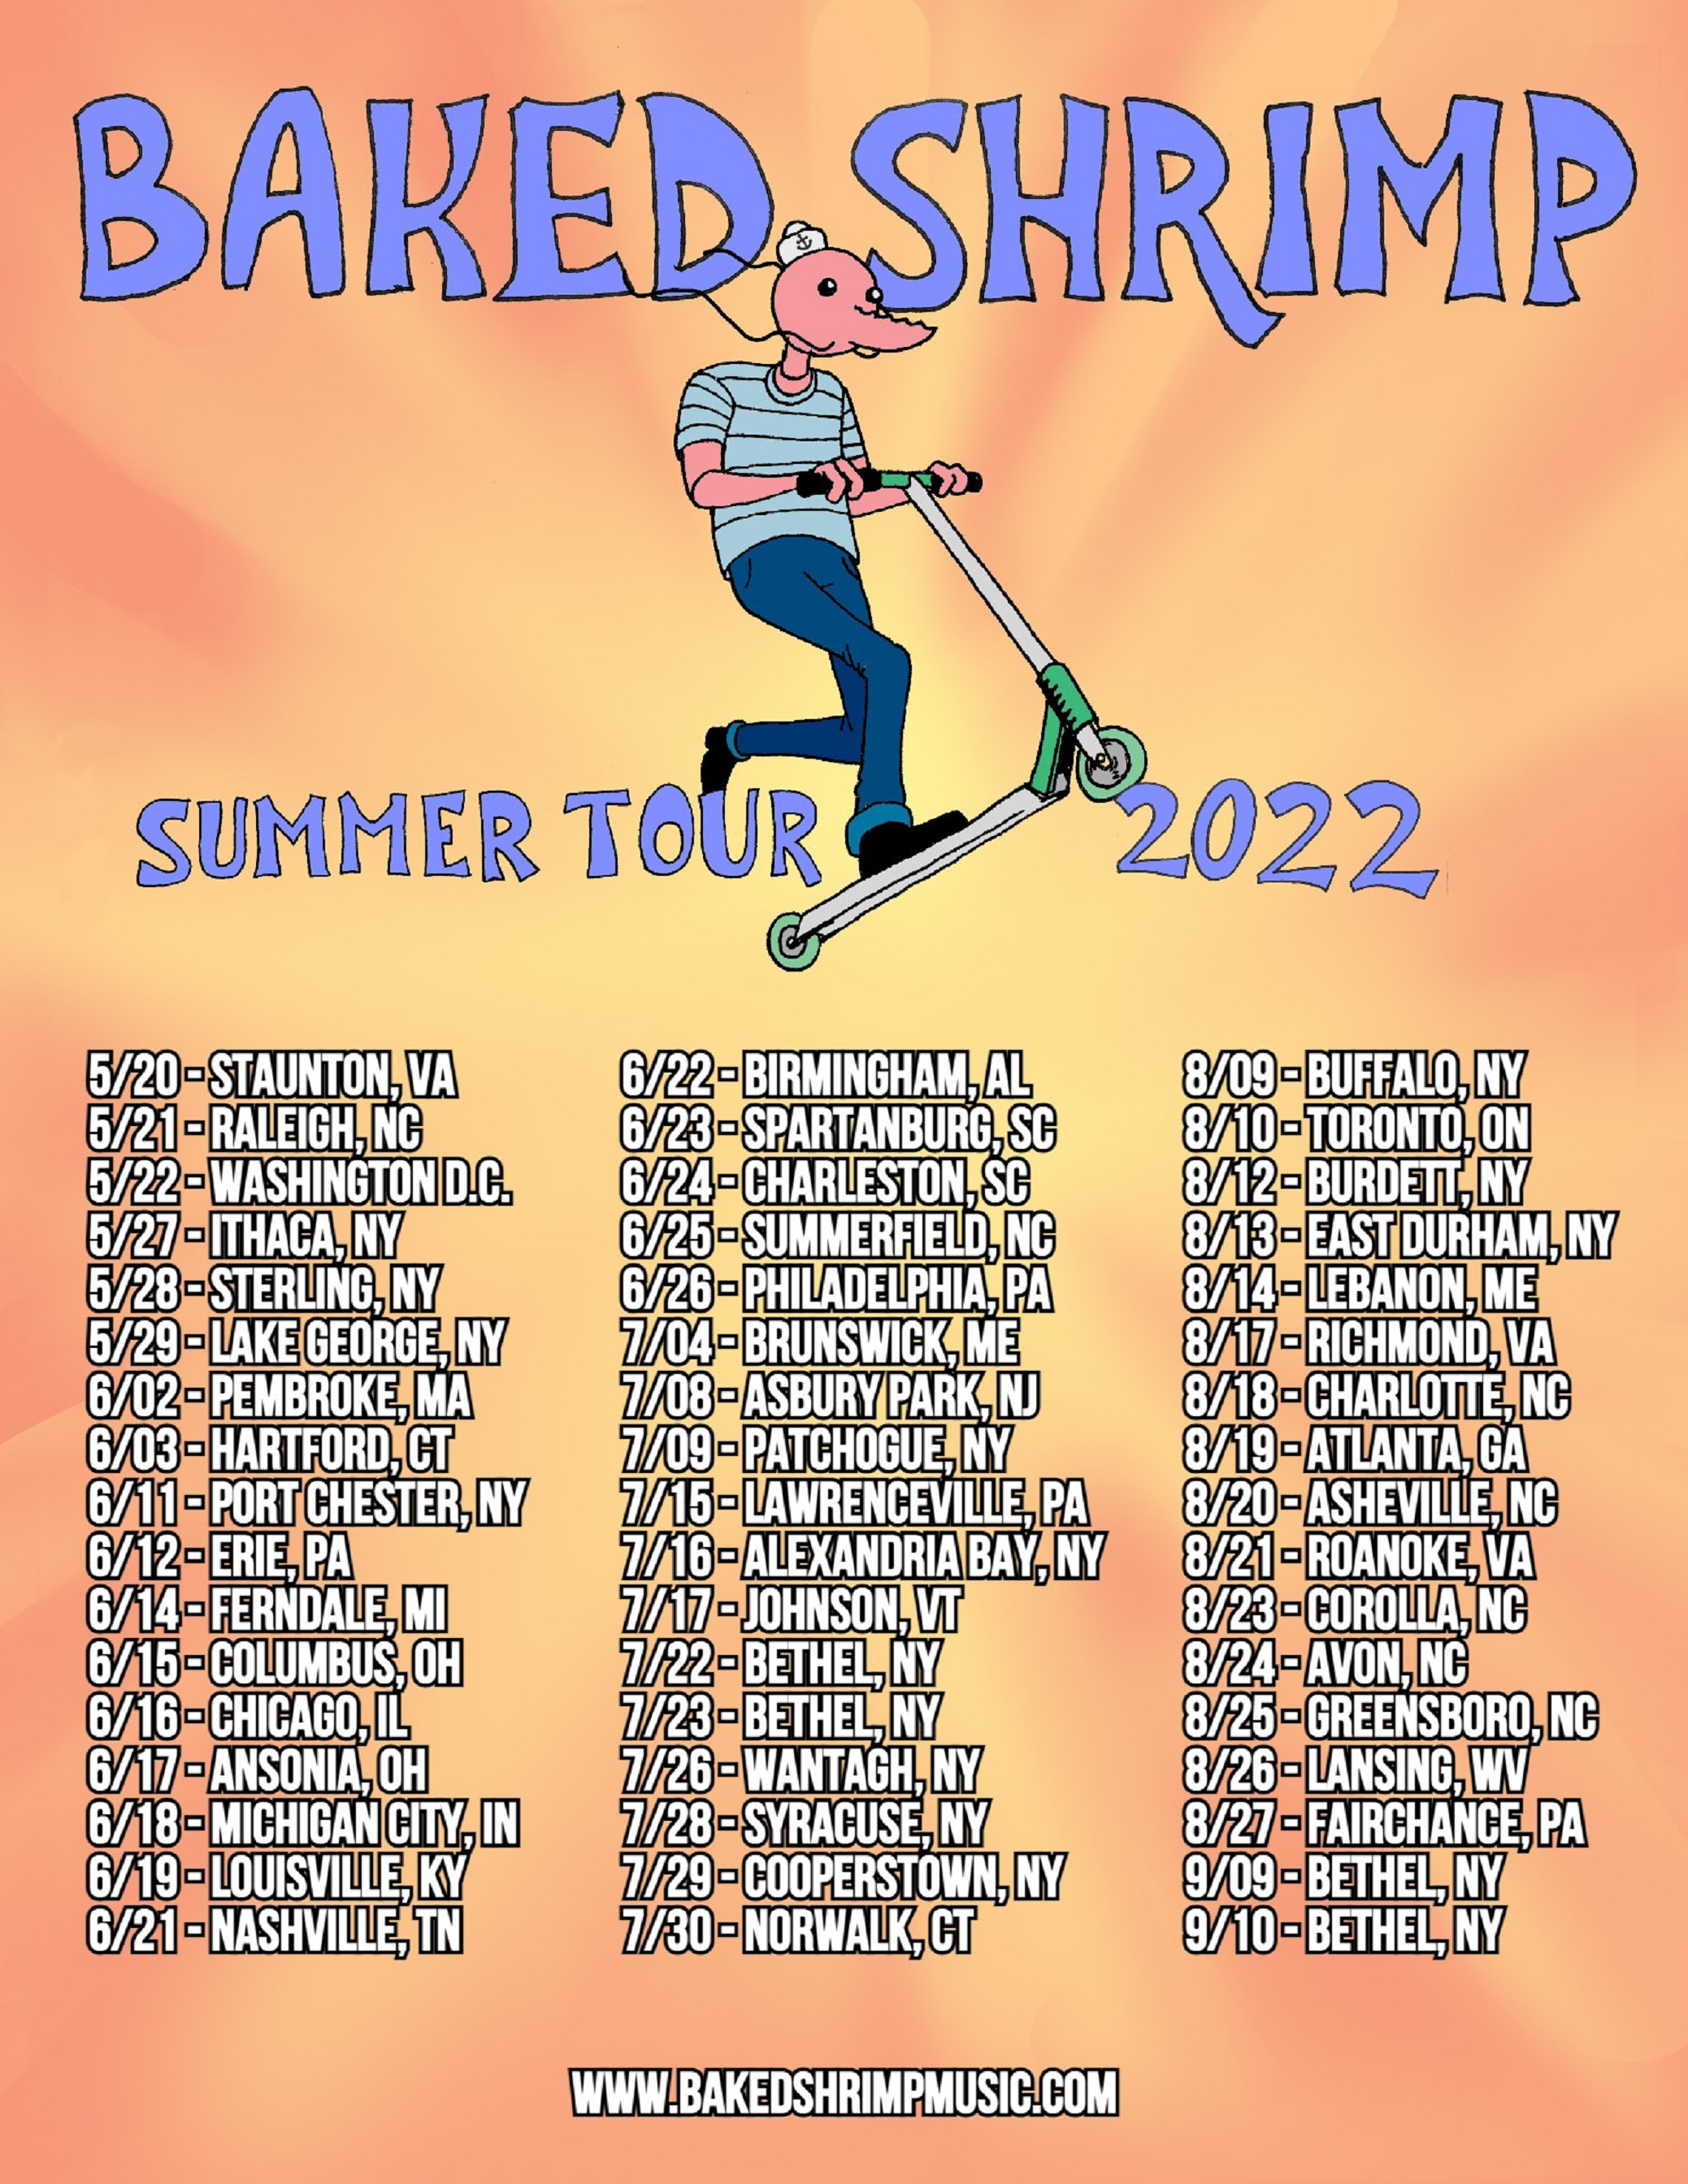 BAKED SHRIMP ANNOUNCES 2022 SUMMER TOUR